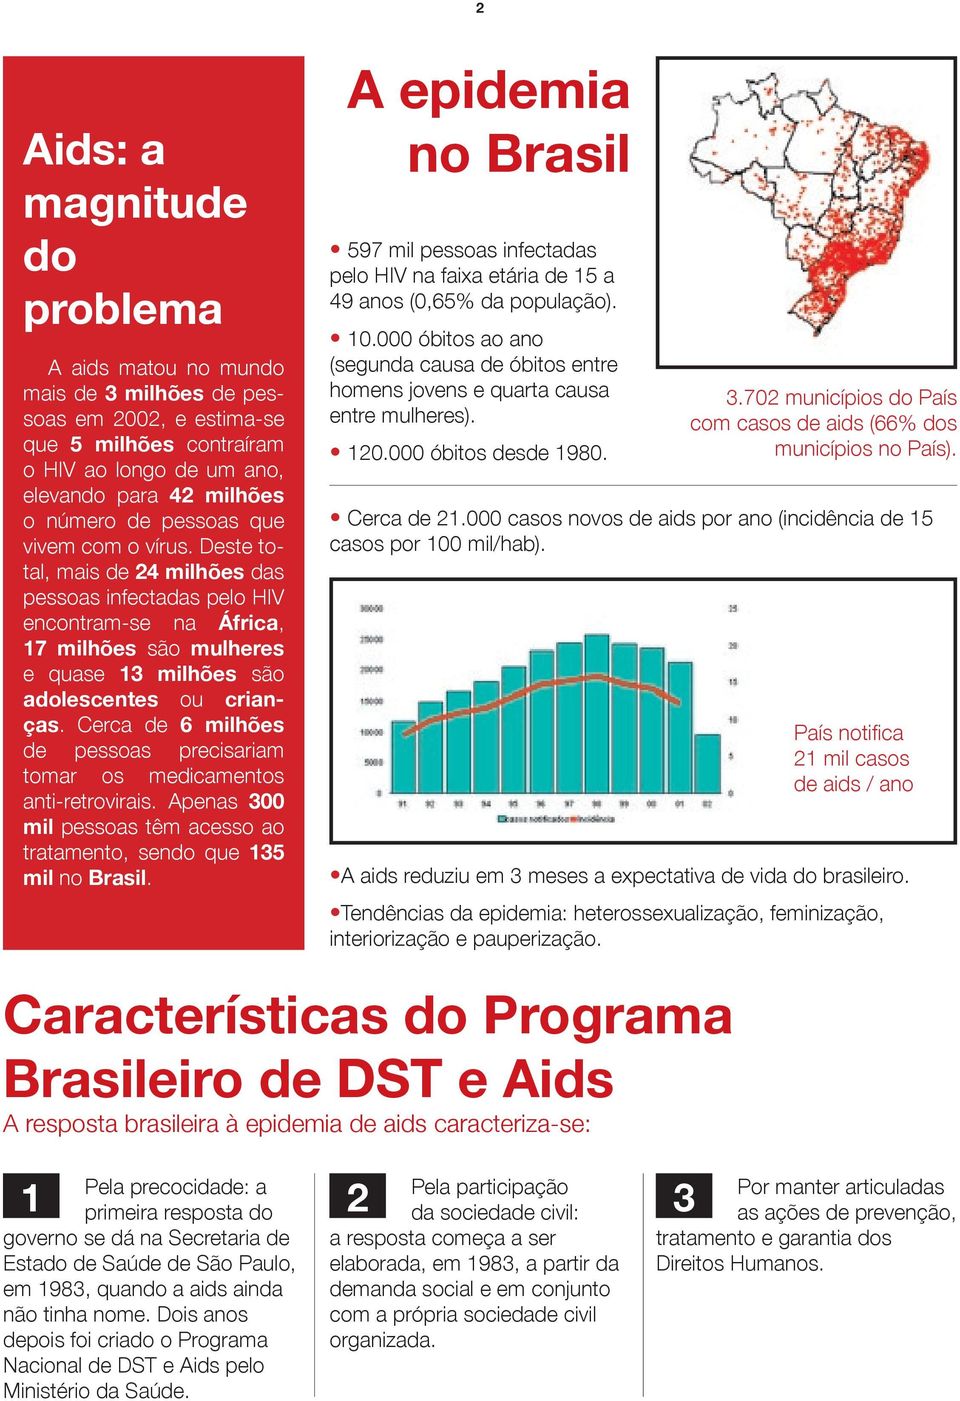 Cerca de 6 milhões de pessoas precisariam tomar os medicamentos anti-retrovirais. Apenas 300 mil pessoas têm acesso ao tratamento, sendo que 135 mil no Brasil.